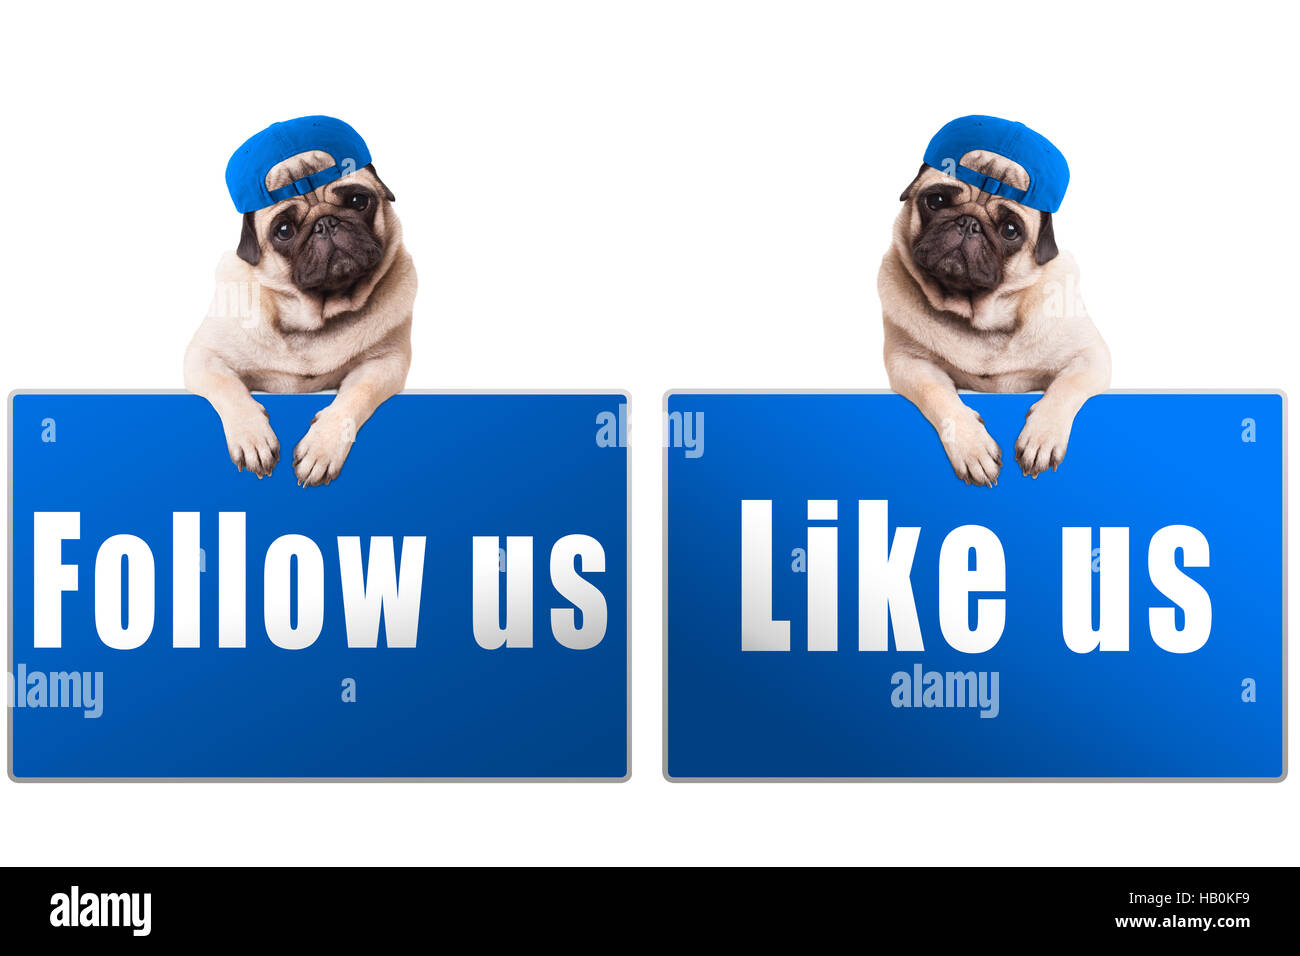 Chiot pug dog avec suivez-nous et comme nous signer et porter bouchon bleu, islolated sur fond blanc Banque D'Images